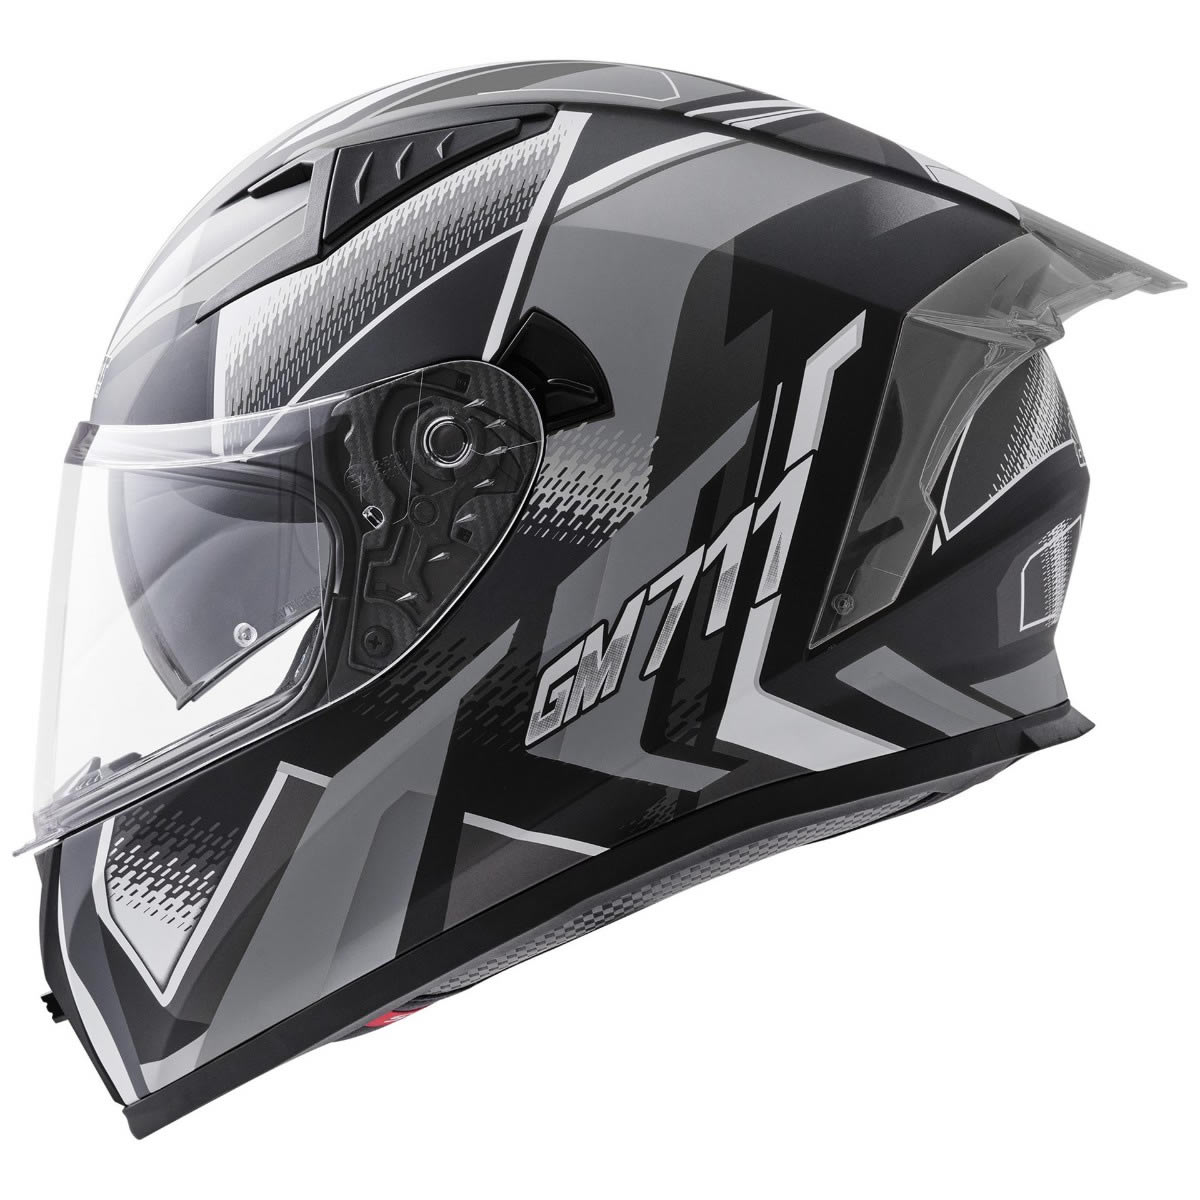 Germot GM 711 Helm, schwarz-grau matt